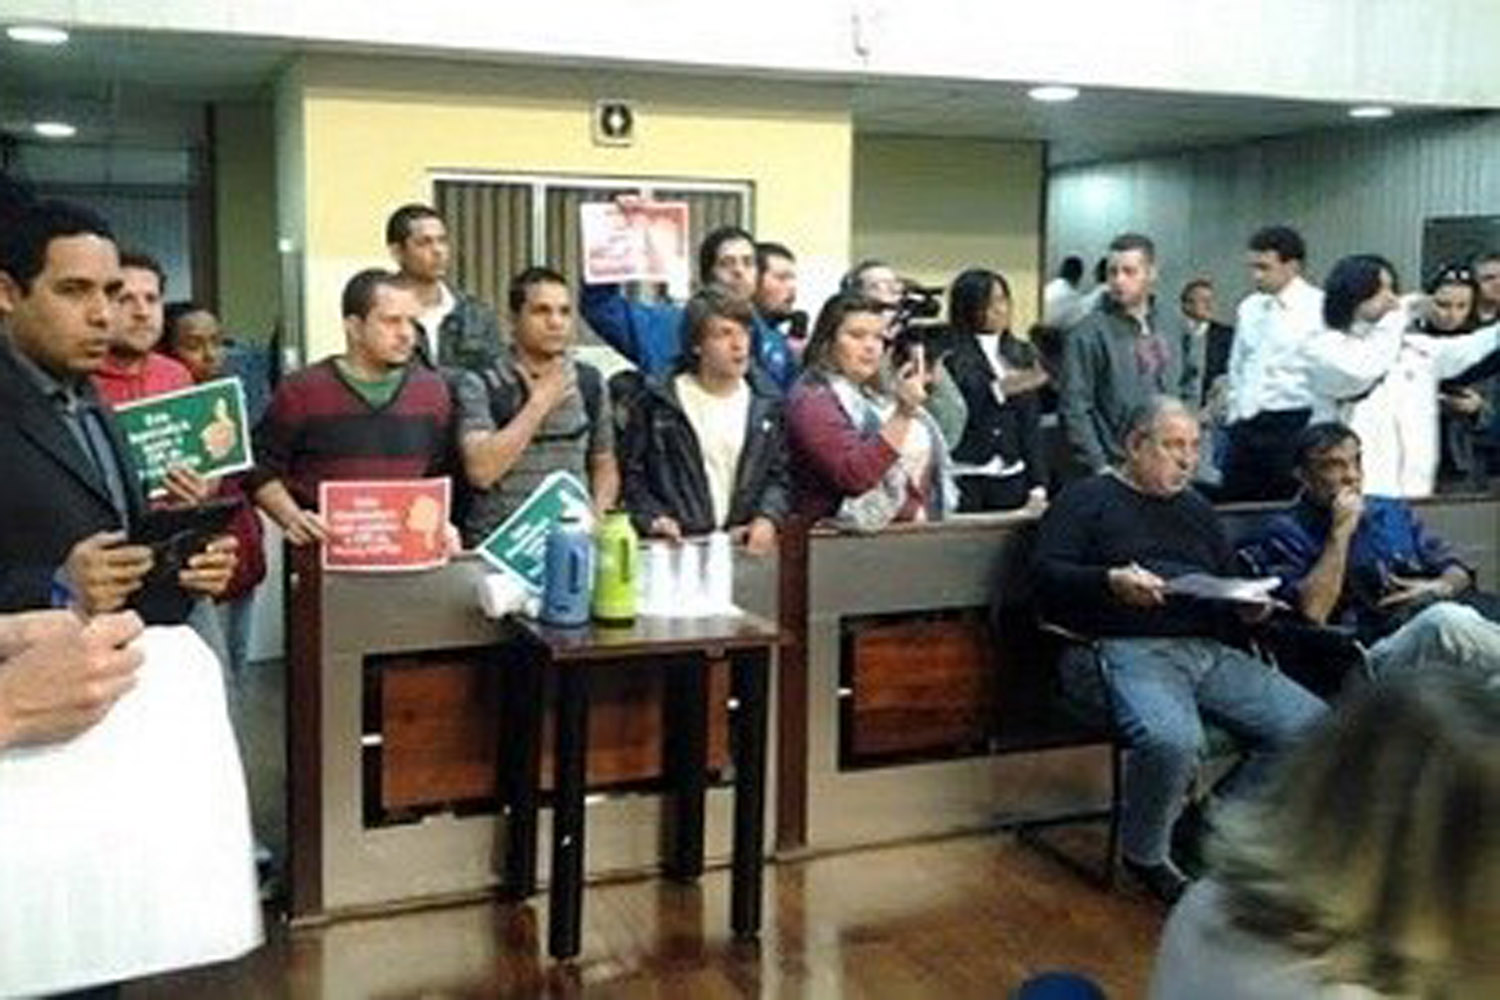 Juventude ocupa Assembleia por CPI da corrupção tucana no Metrô